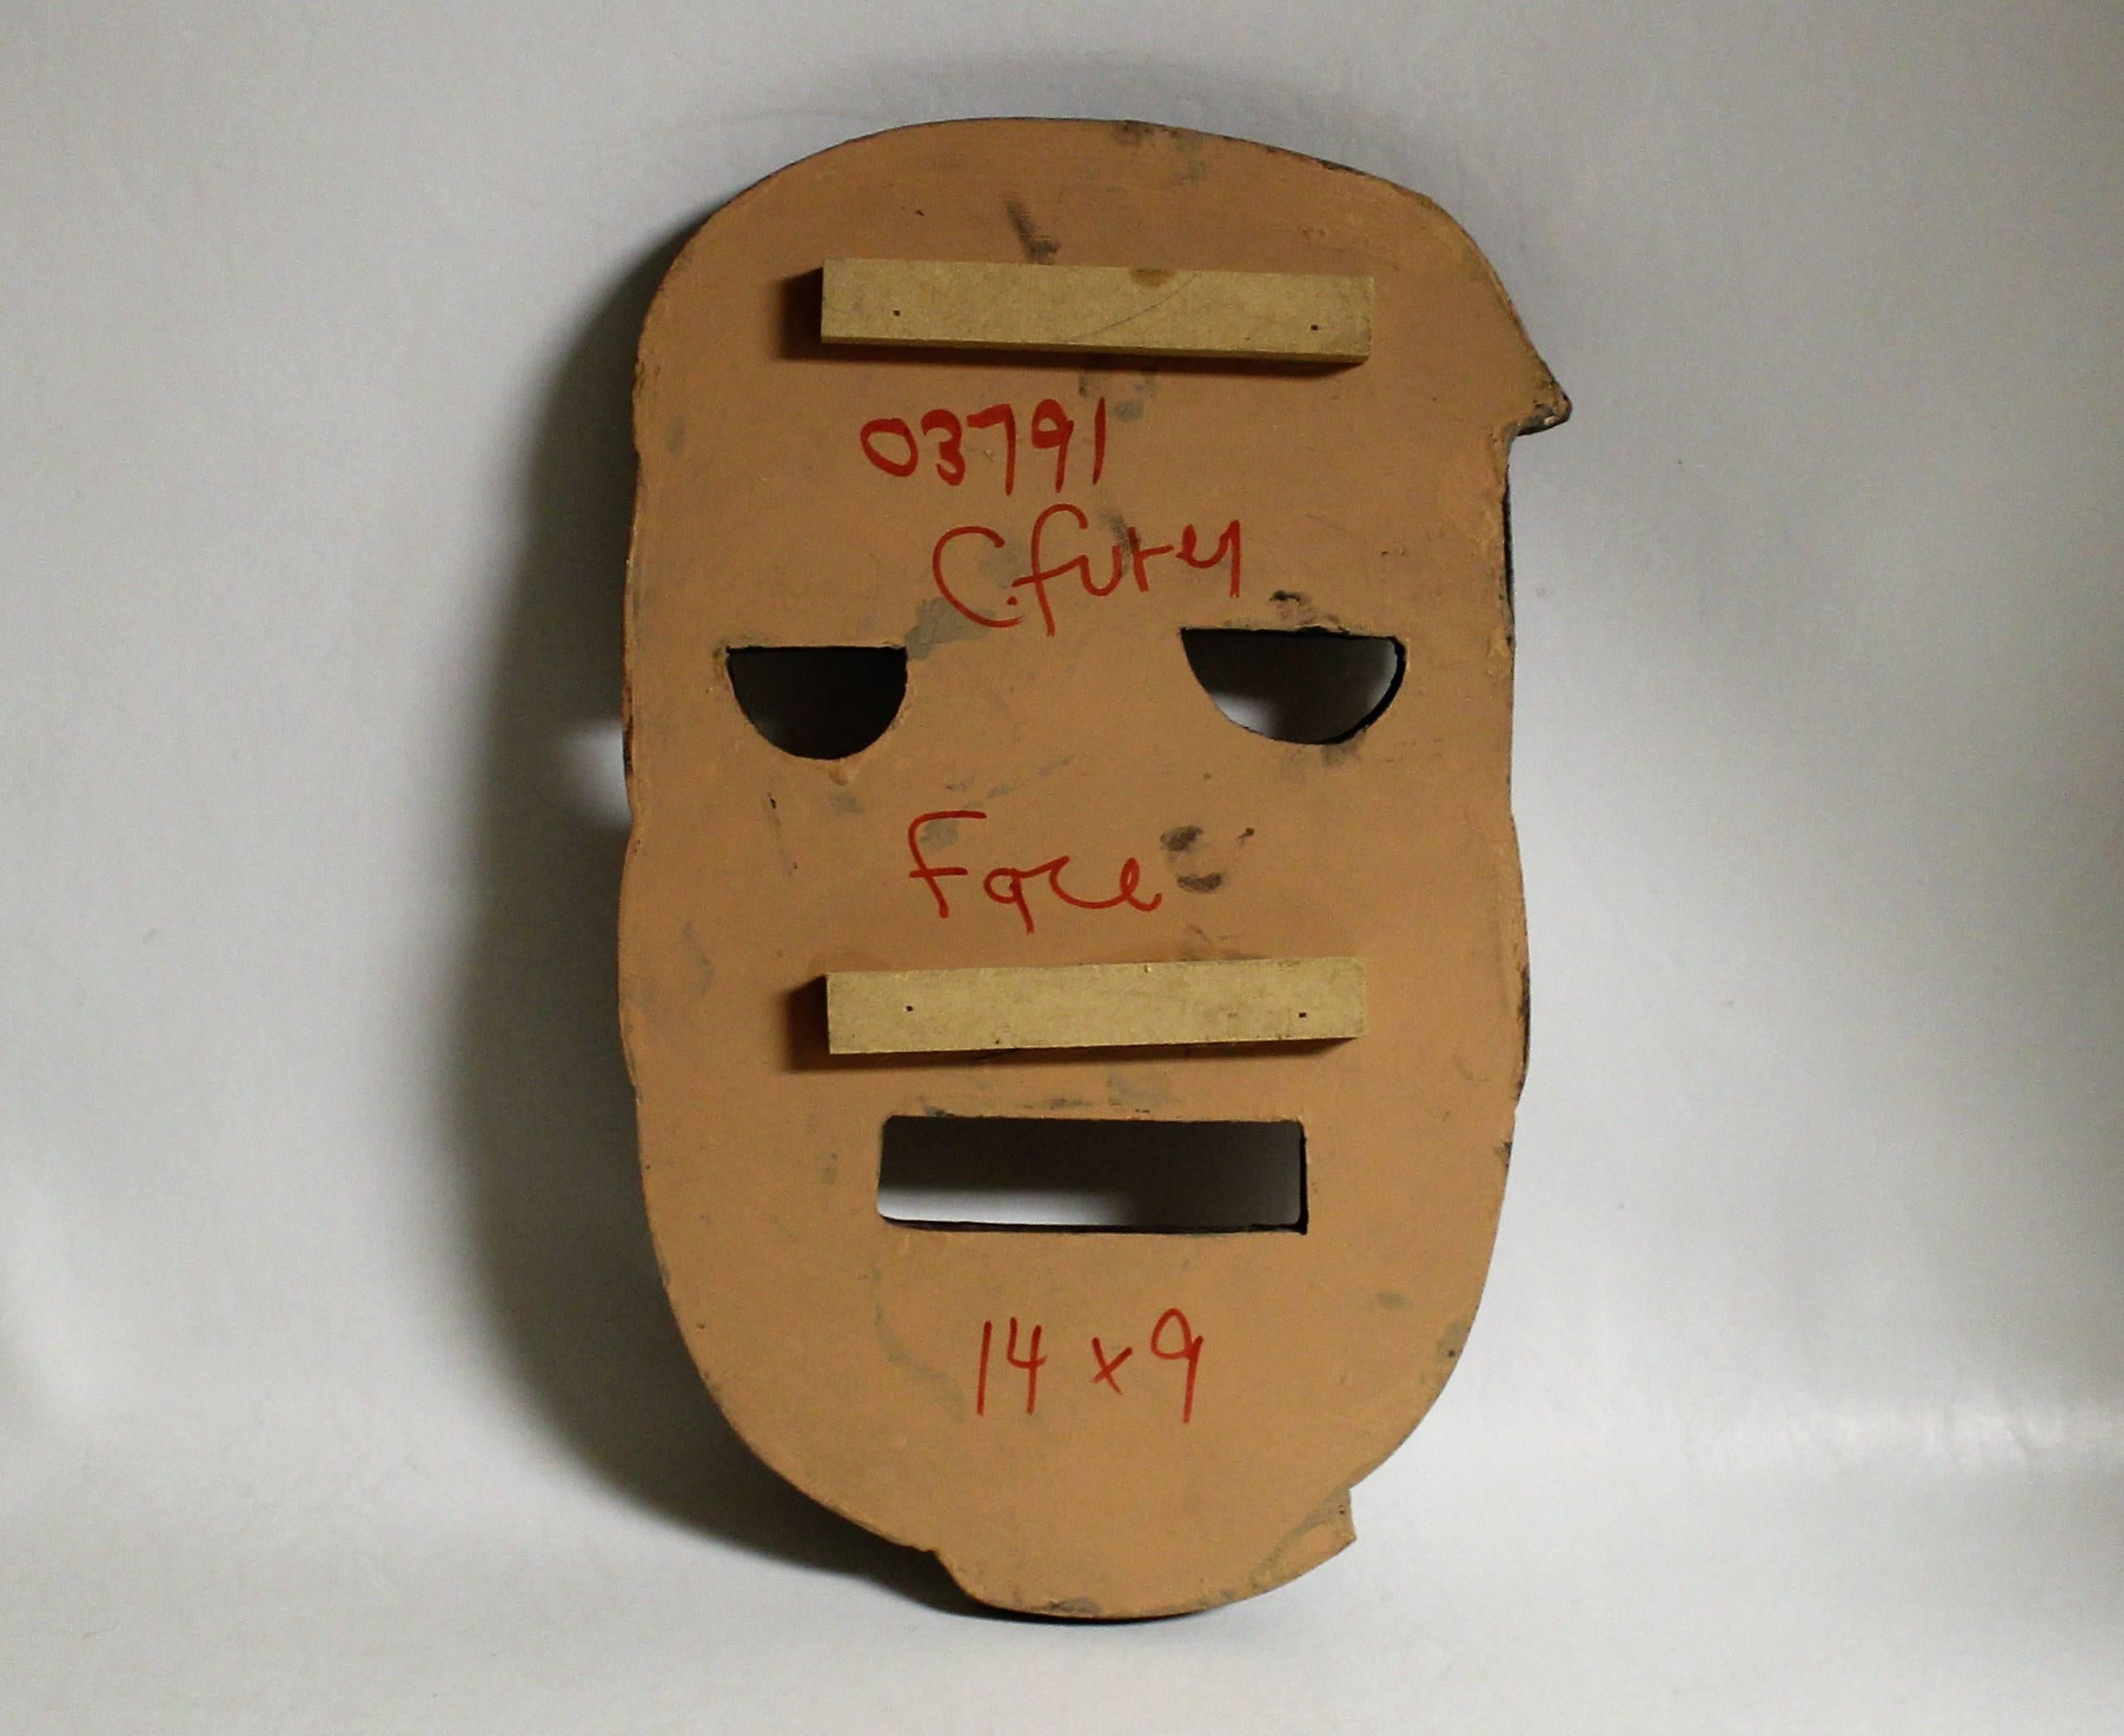 Conrad Furey Sculpture de masques

Conrad Furey (Canadien 1954-2008).

Conrad Furey a grandi à Baie Verte dans une famille de 11 enfants ; son père a travaillé comme pêcheur, bûcheron, camionneur et mineur. Les sujets durables de l'artiste